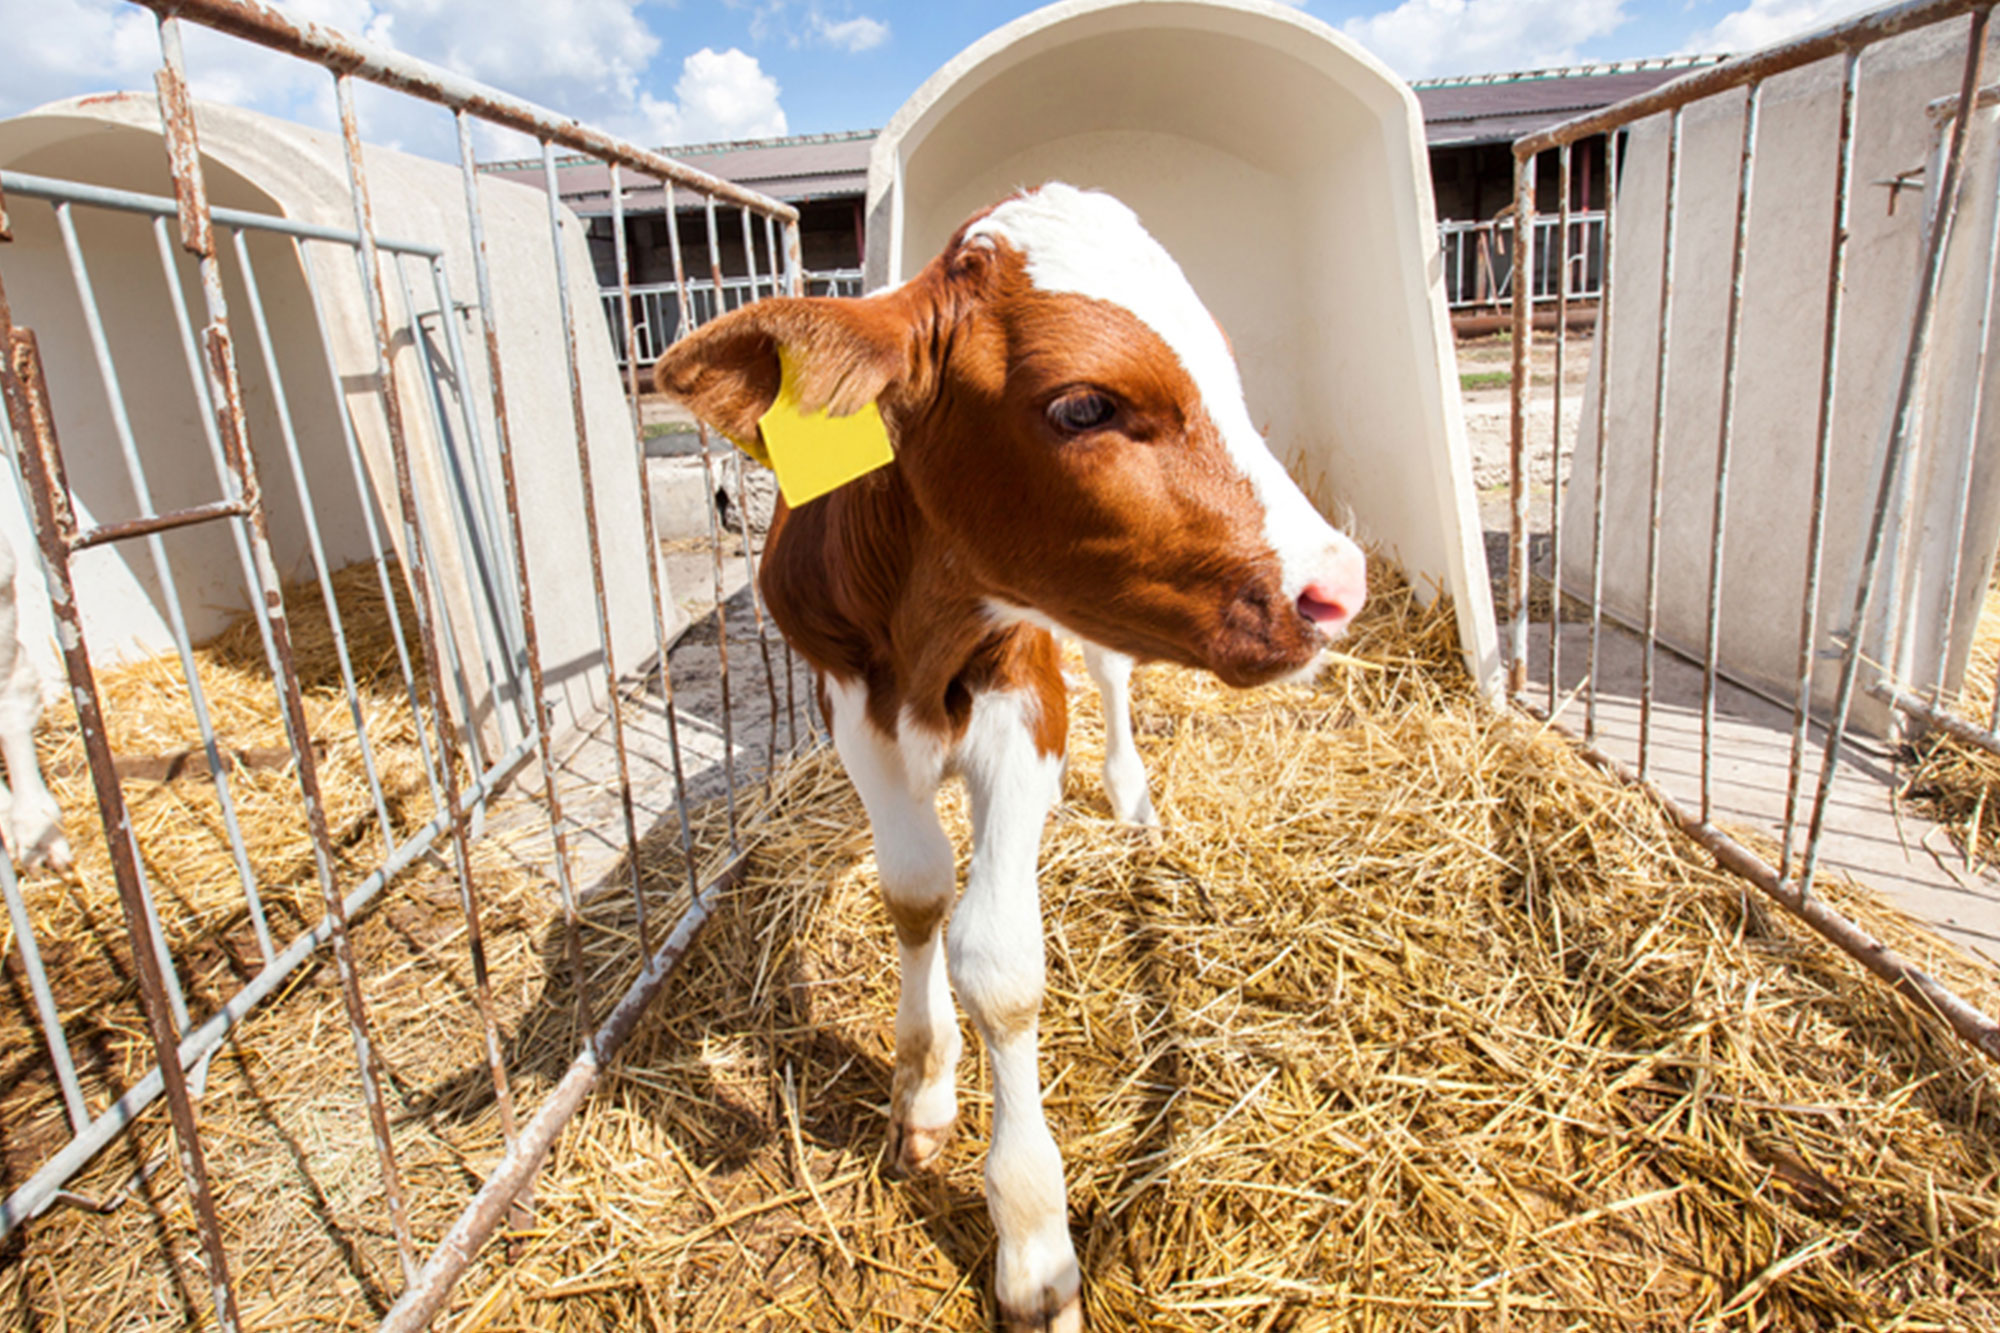 Immagine di un vitello nel recinto di una fattoria